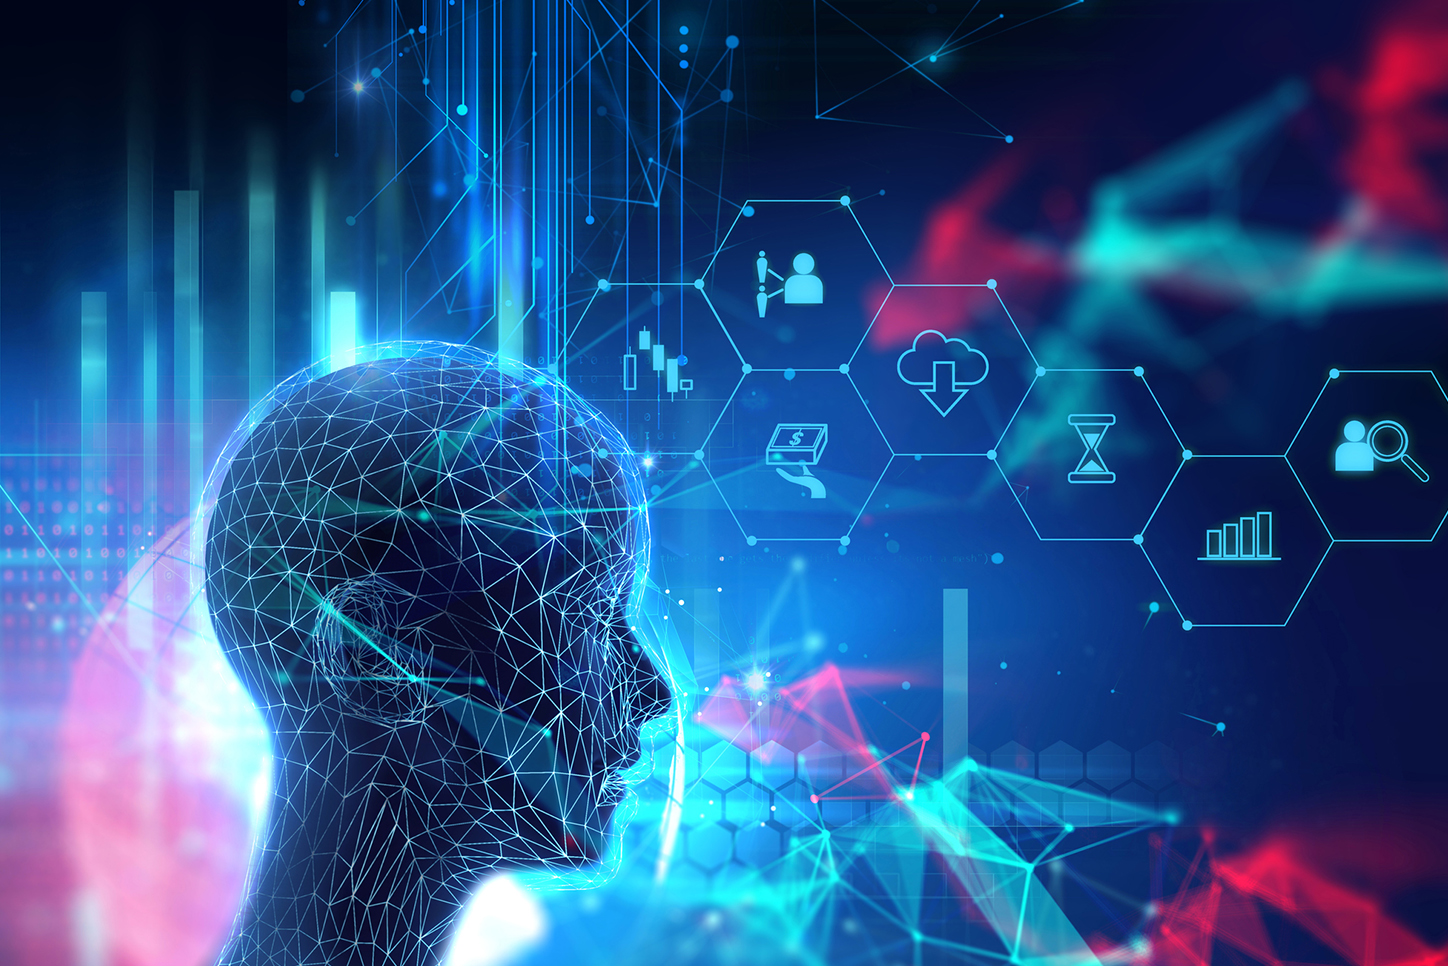 financialounge -  Diagnostica per immagini healthcare intelligenza artificiale machine learning sanità